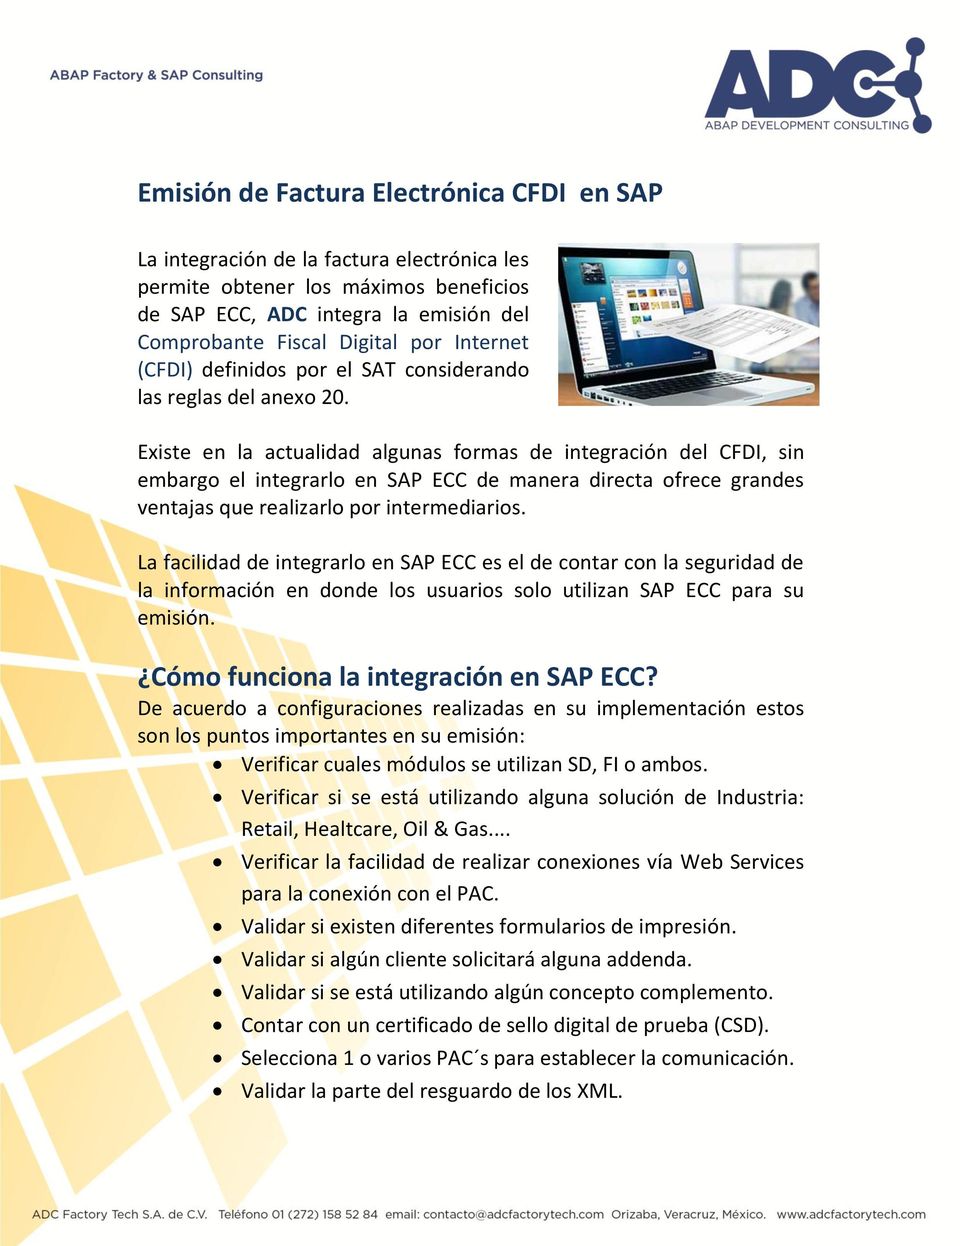 Existe en la actualidad algunas formas de integración del CFDI, sin embargo el integrarlo en SAP ECC de manera directa ofrece grandes ventajas que realizarlo por intermediarios.